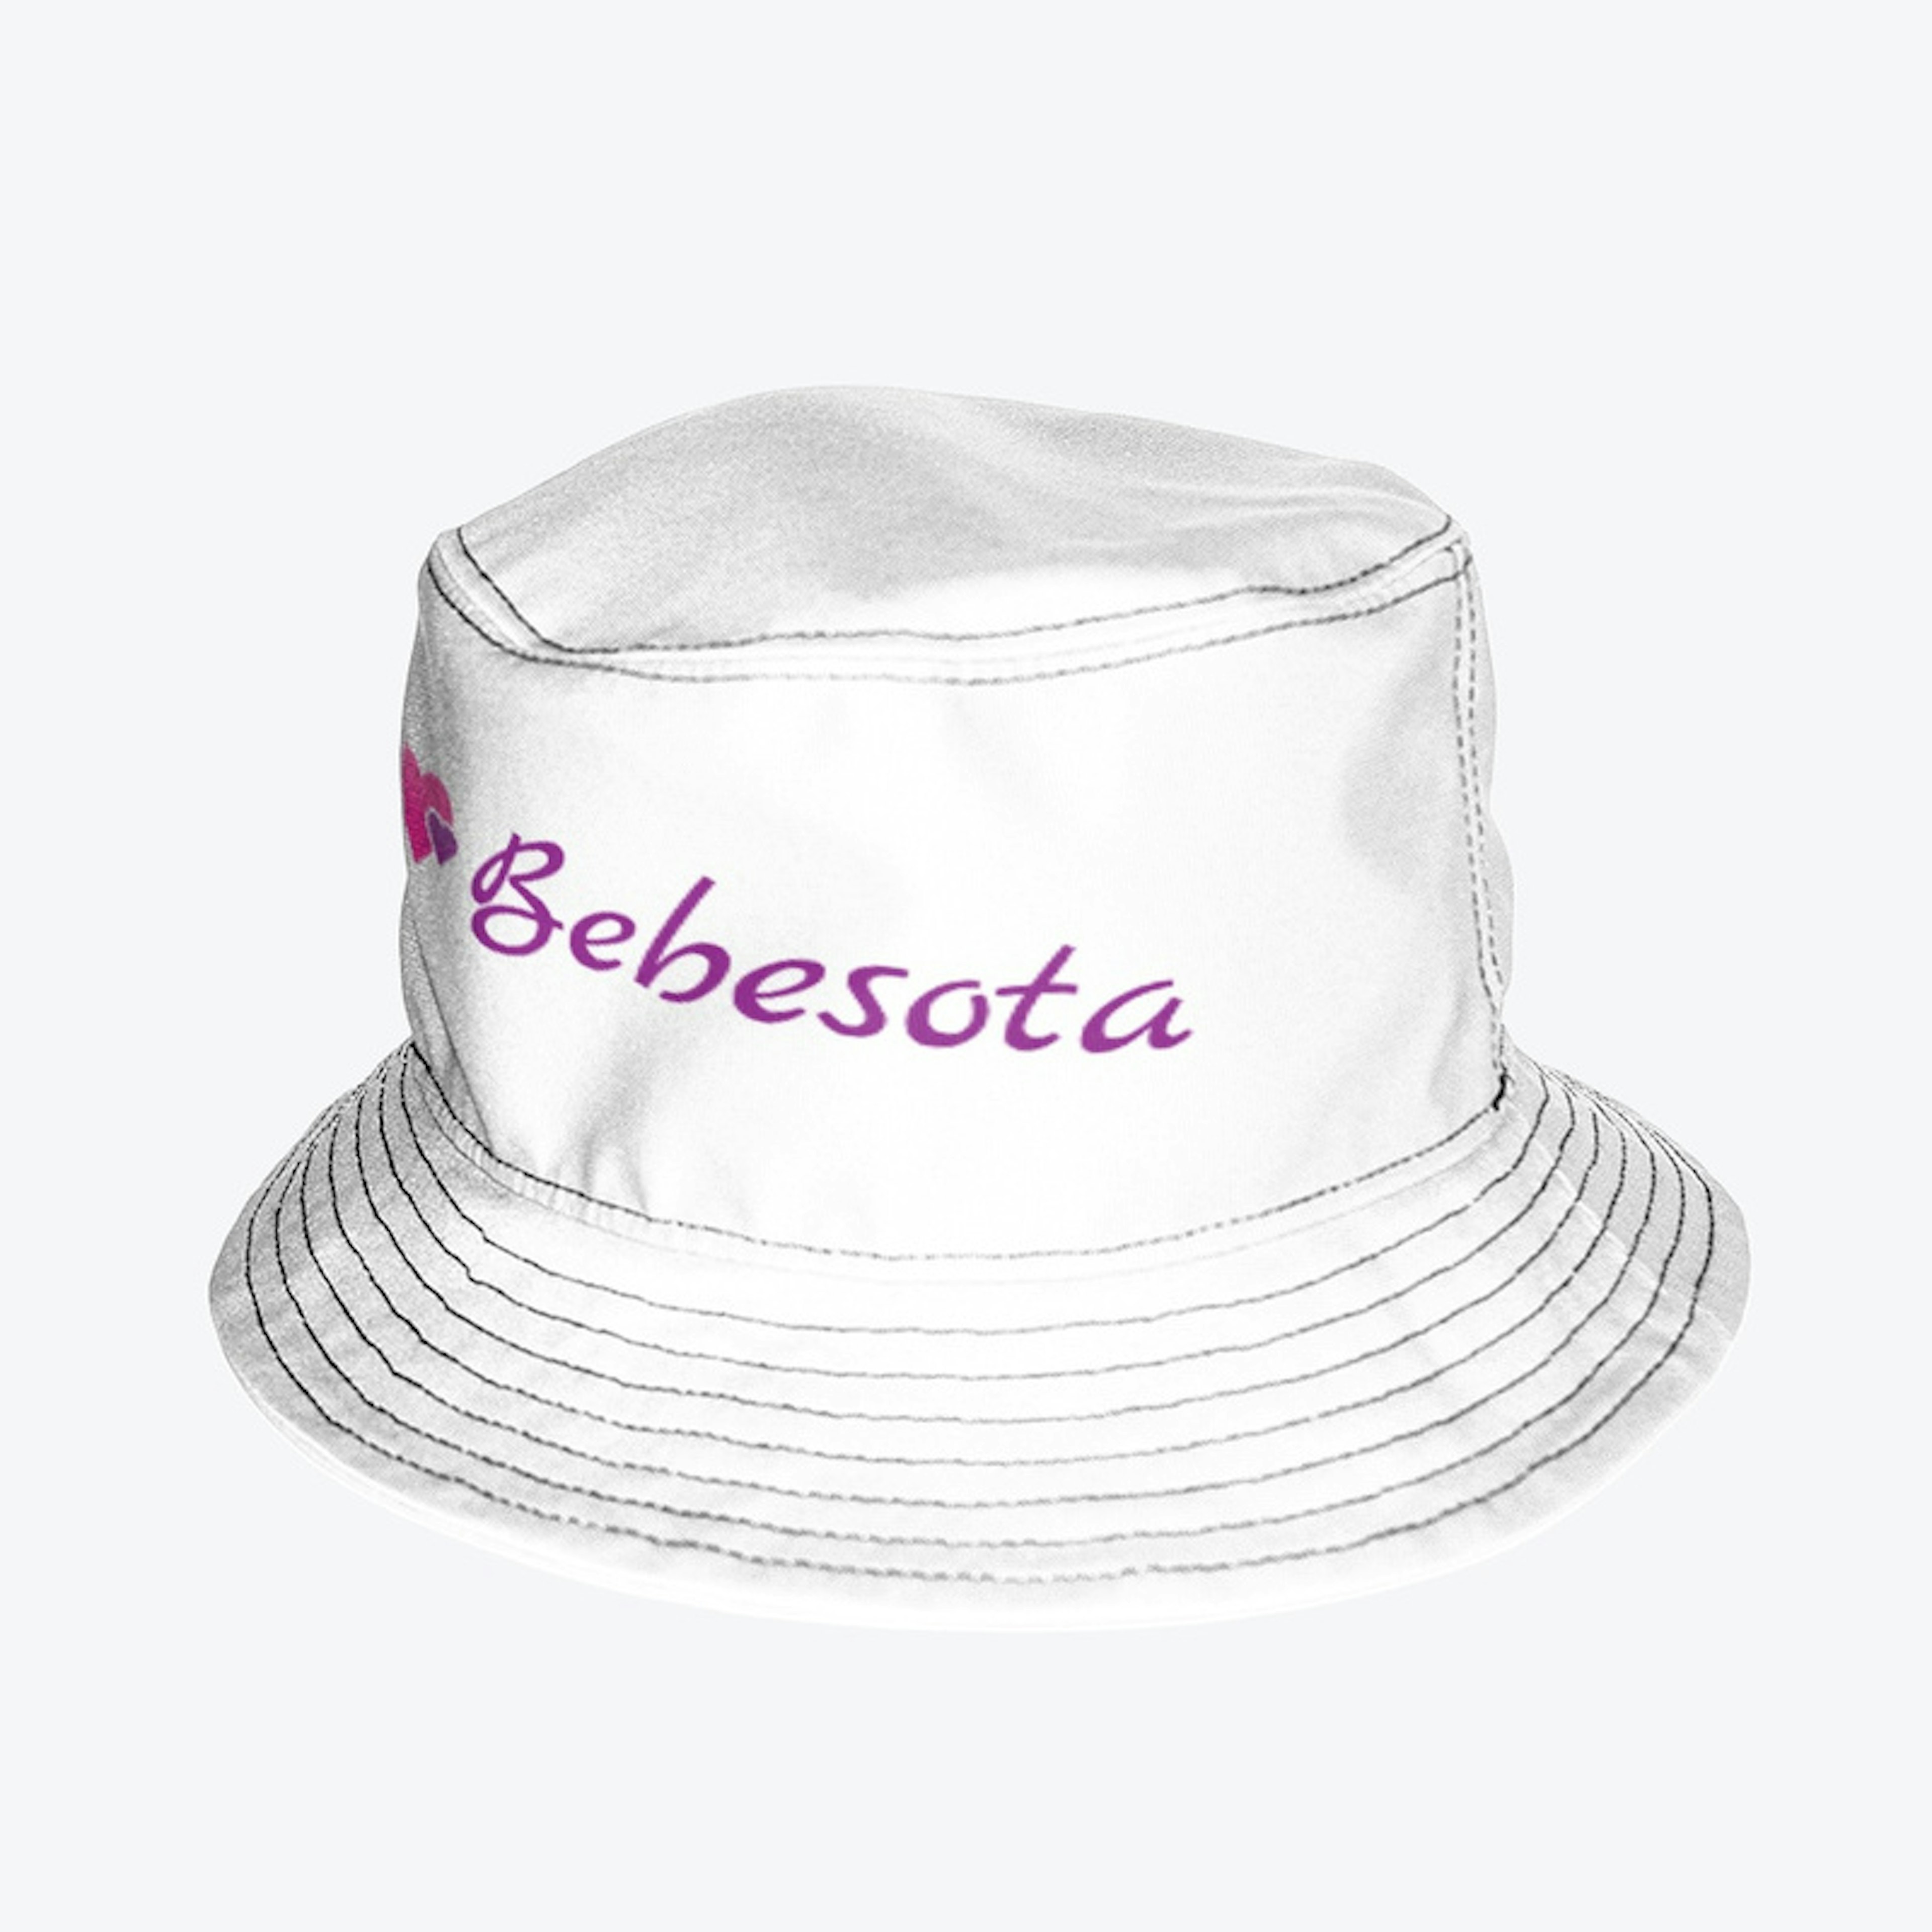 Miss Bebesota Bucket Hat